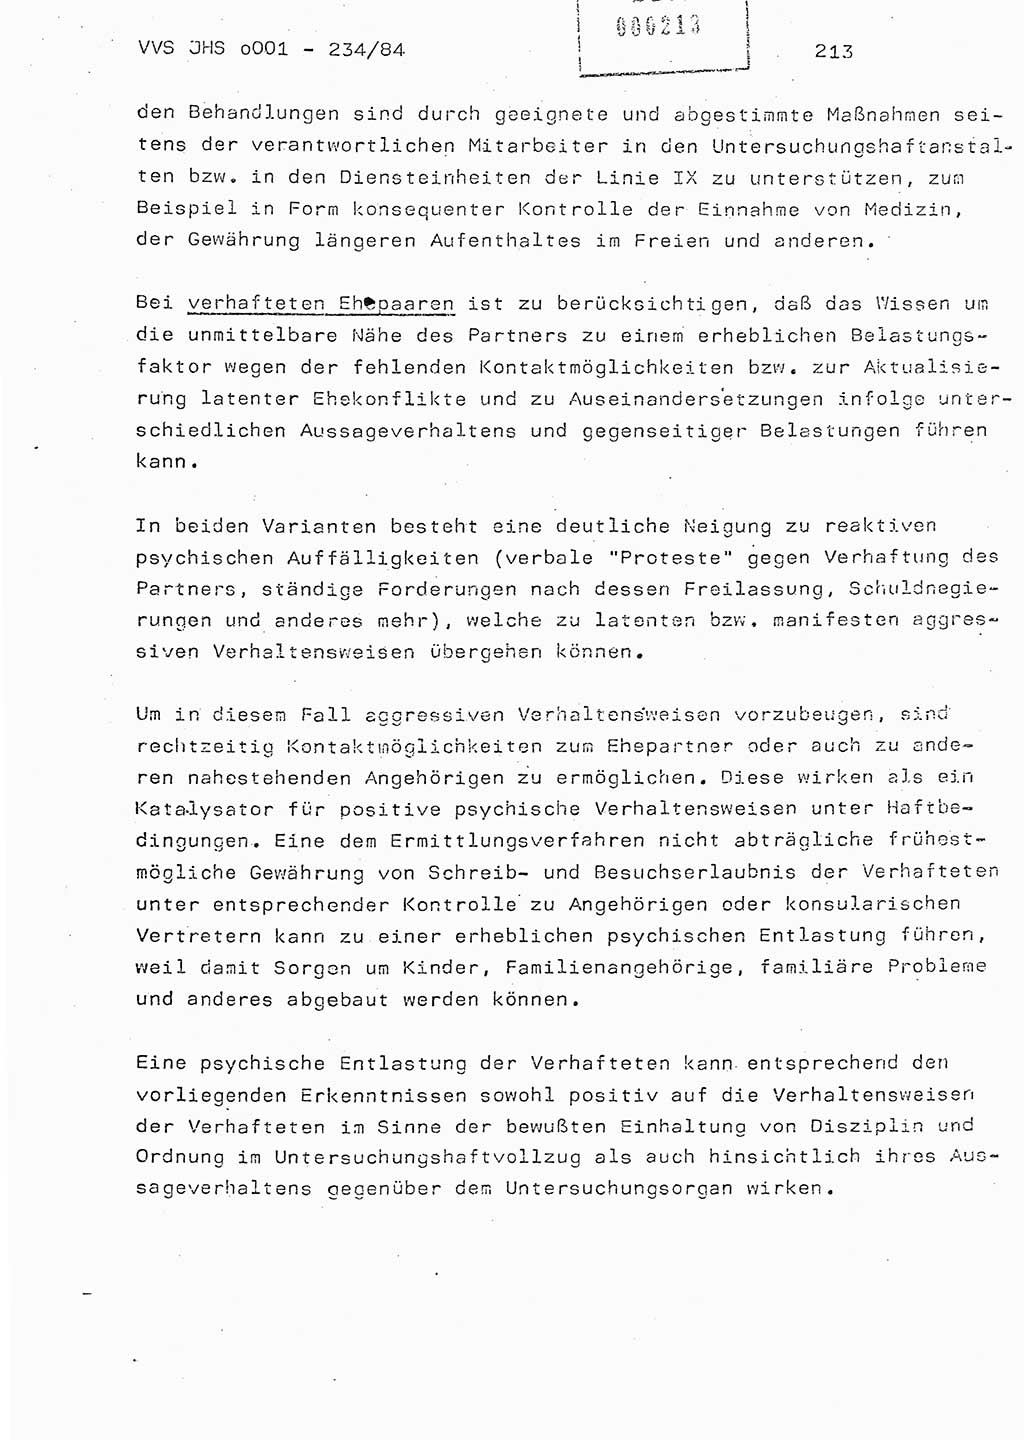 Dissertation Oberst Siegfried Rataizick (Abt. ⅩⅣ), Oberstleutnant Volkmar Heinz (Abt. ⅩⅣ), Oberstleutnant Werner Stein (HA Ⅸ), Hauptmann Heinz Conrad (JHS), Ministerium für Staatssicherheit (MfS) [Deutsche Demokratische Republik (DDR)], Juristische Hochschule (JHS), Vertrauliche Verschlußsache (VVS) o001-234/84, Potsdam 1984, Seite 213 (Diss. MfS DDR JHS VVS o001-234/84 1984, S. 213)